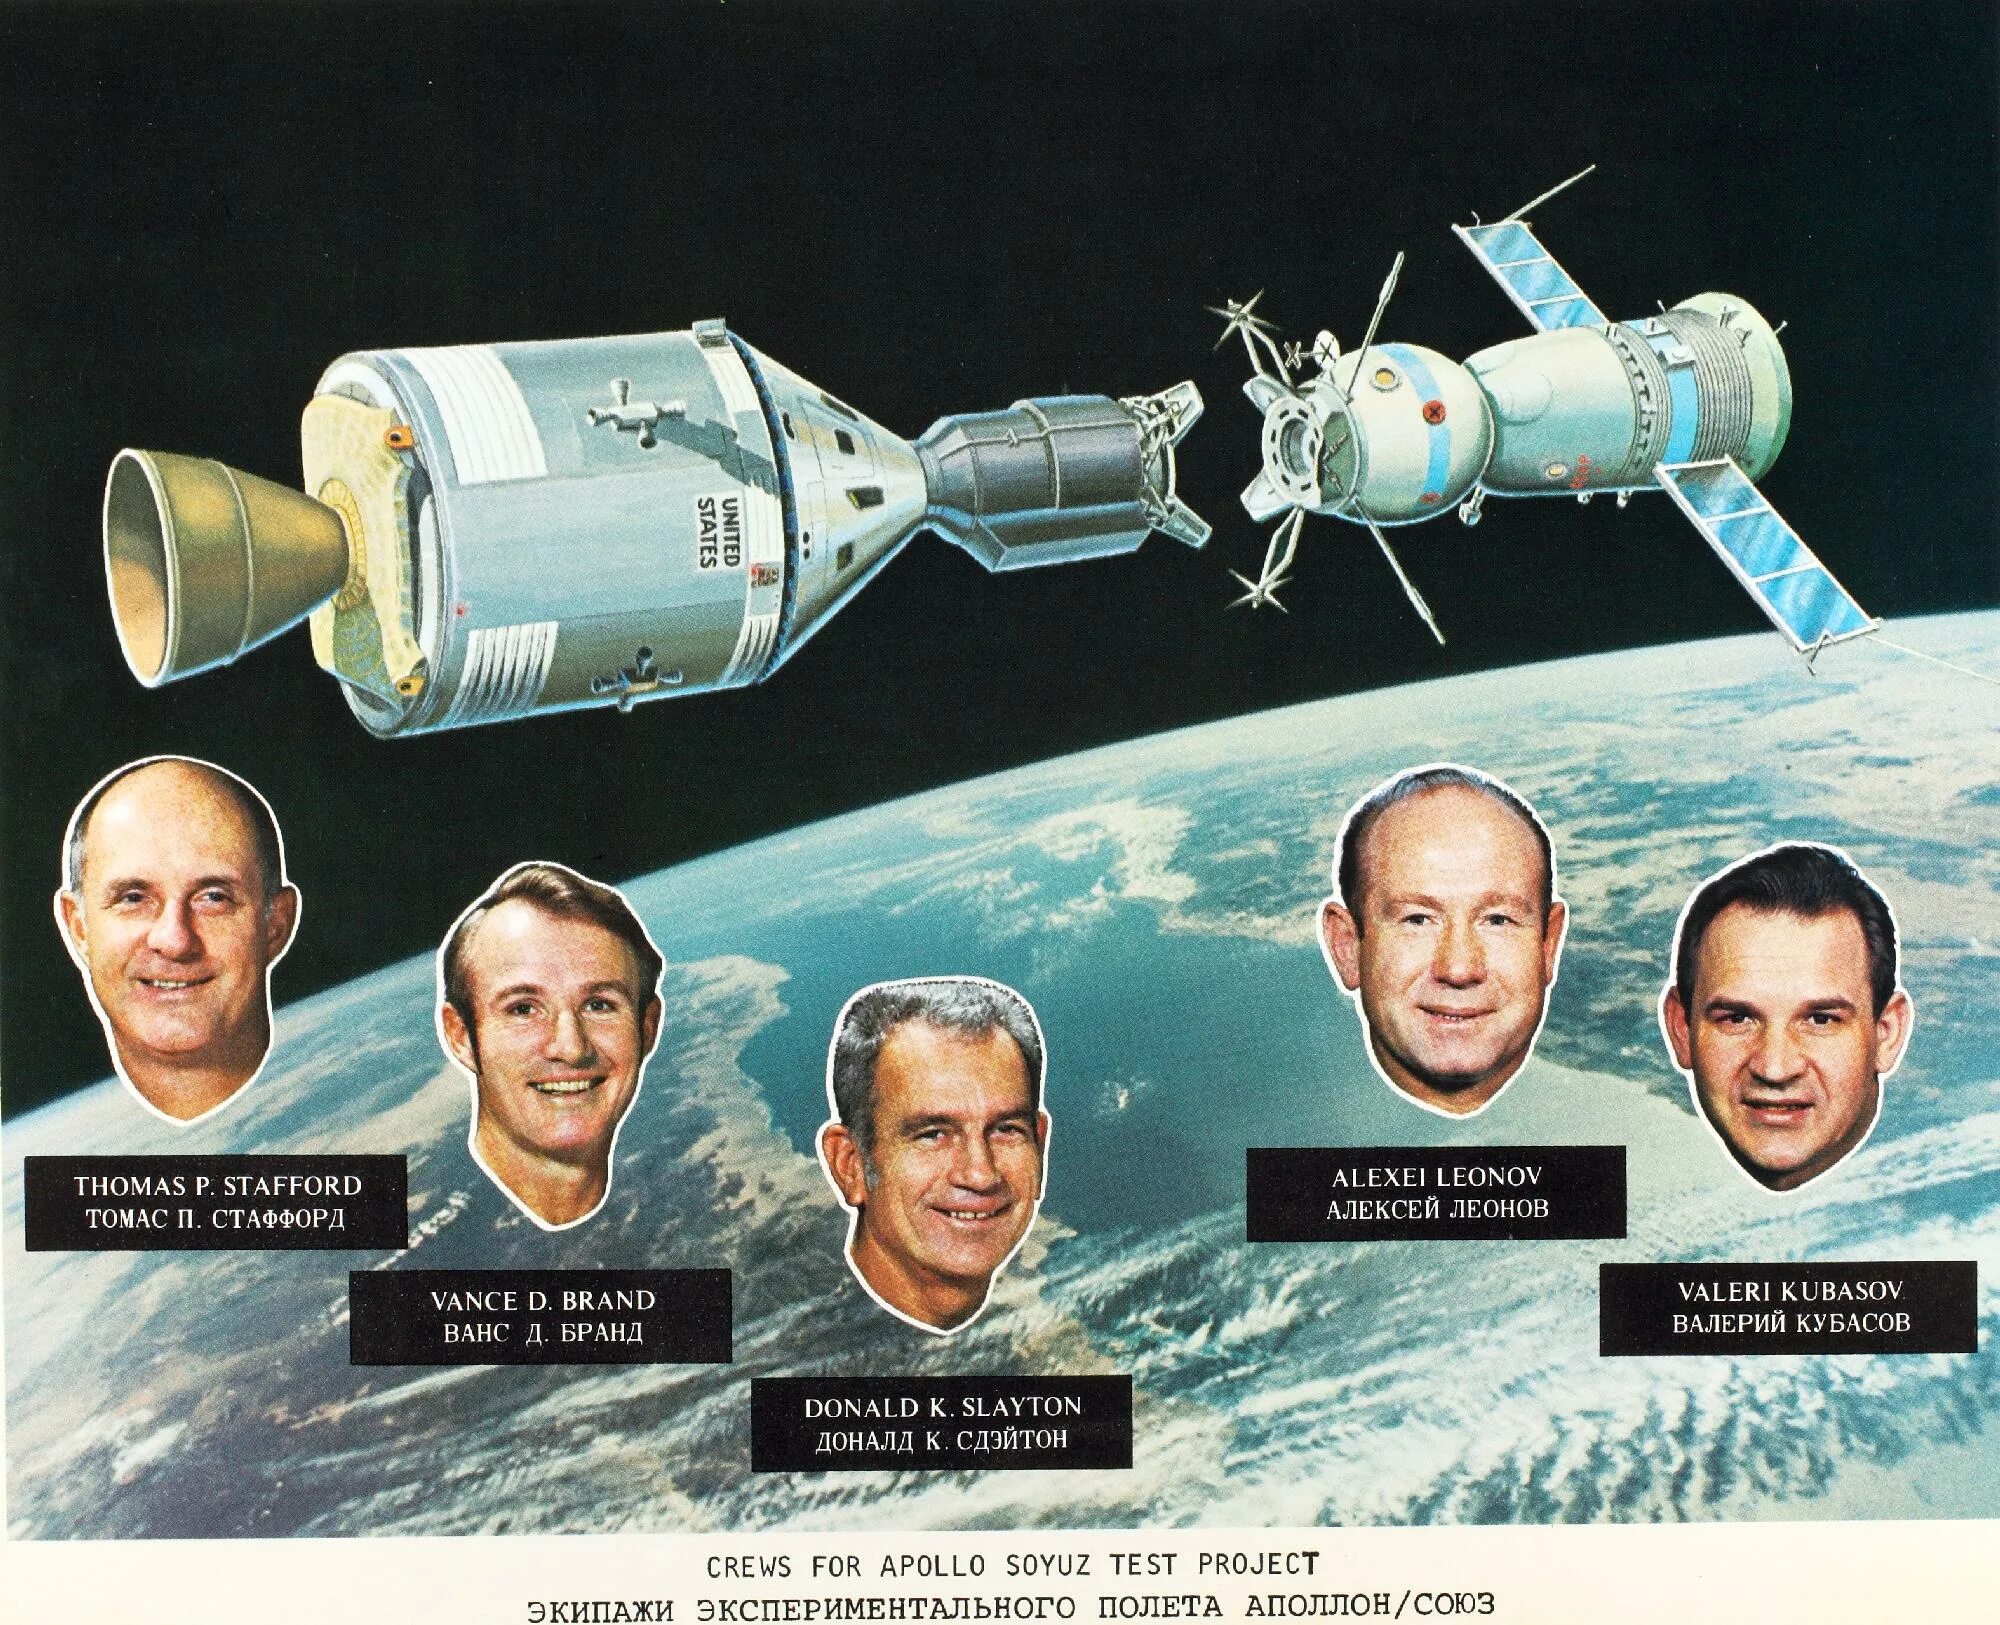 Как называется советский космический. Полет Союз-Аполлон 1975. Советский корабль «Союз-19» и американский корабль «Аполлон».. Советско-американский полет в космос по программе Союз Аполлон. 1975 Стыковка кораблей Союз и Аполлон.